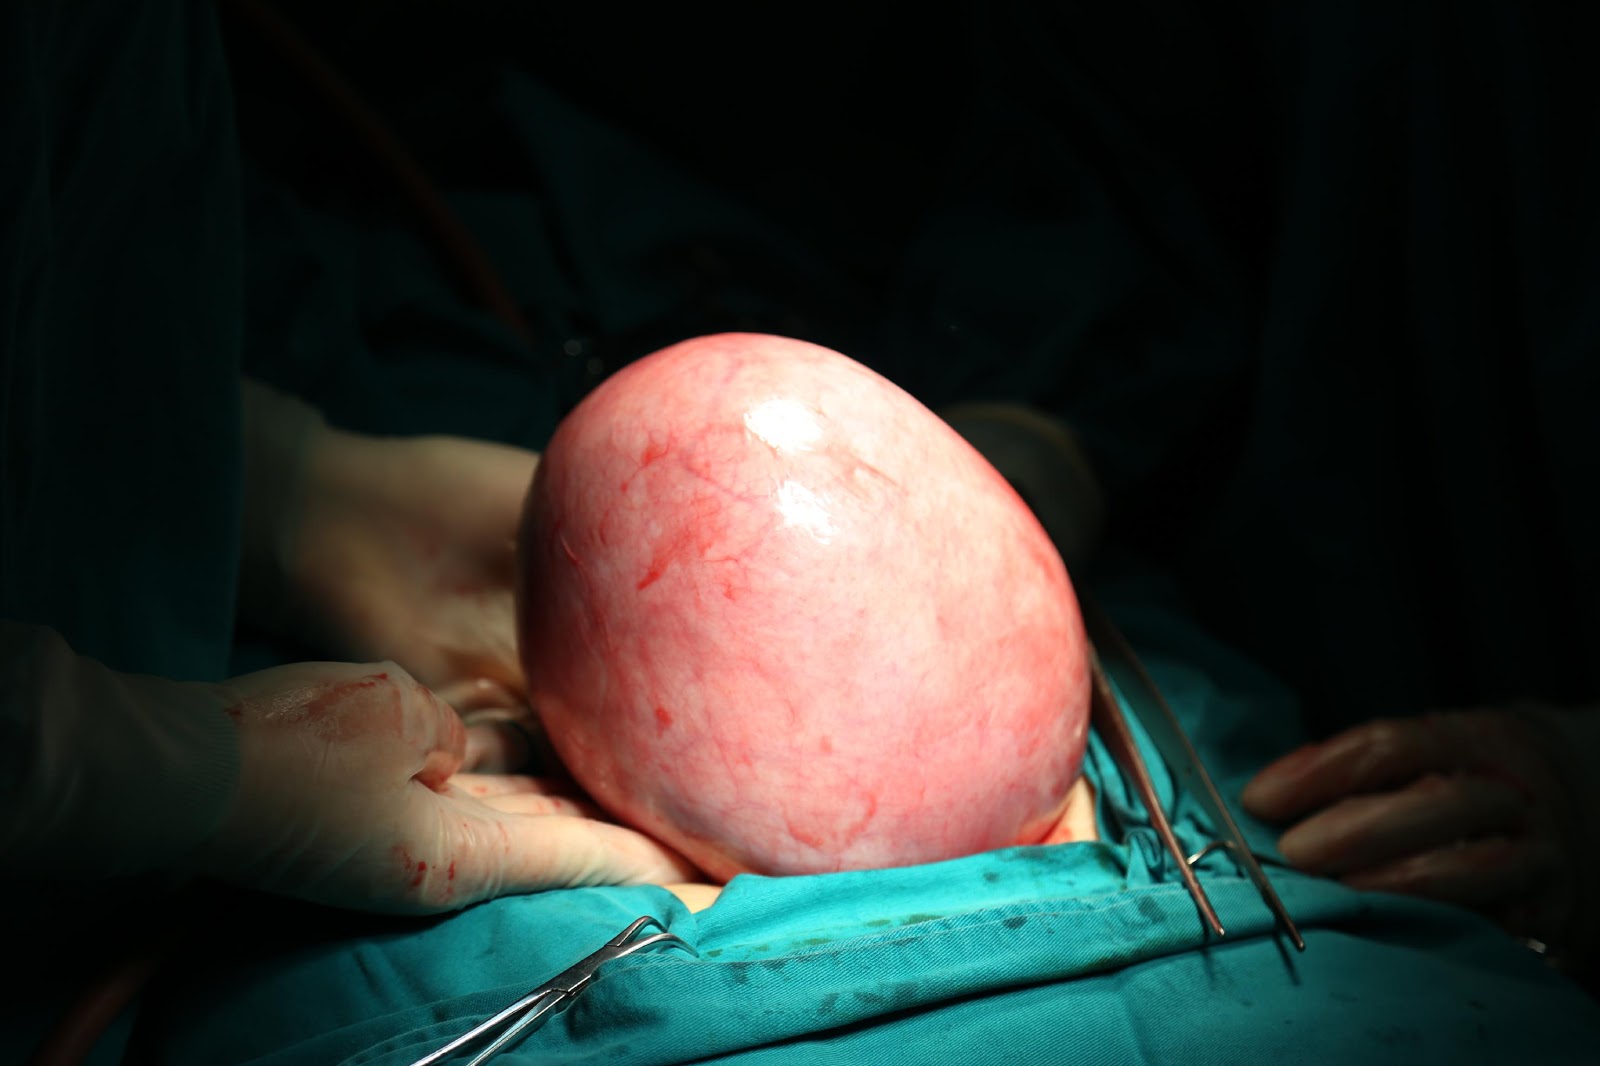 Nữ bệnh nhân rong kinh kéo dài, đi khám bác sĩ phát hiện khối u 2kg ở ổ bụng